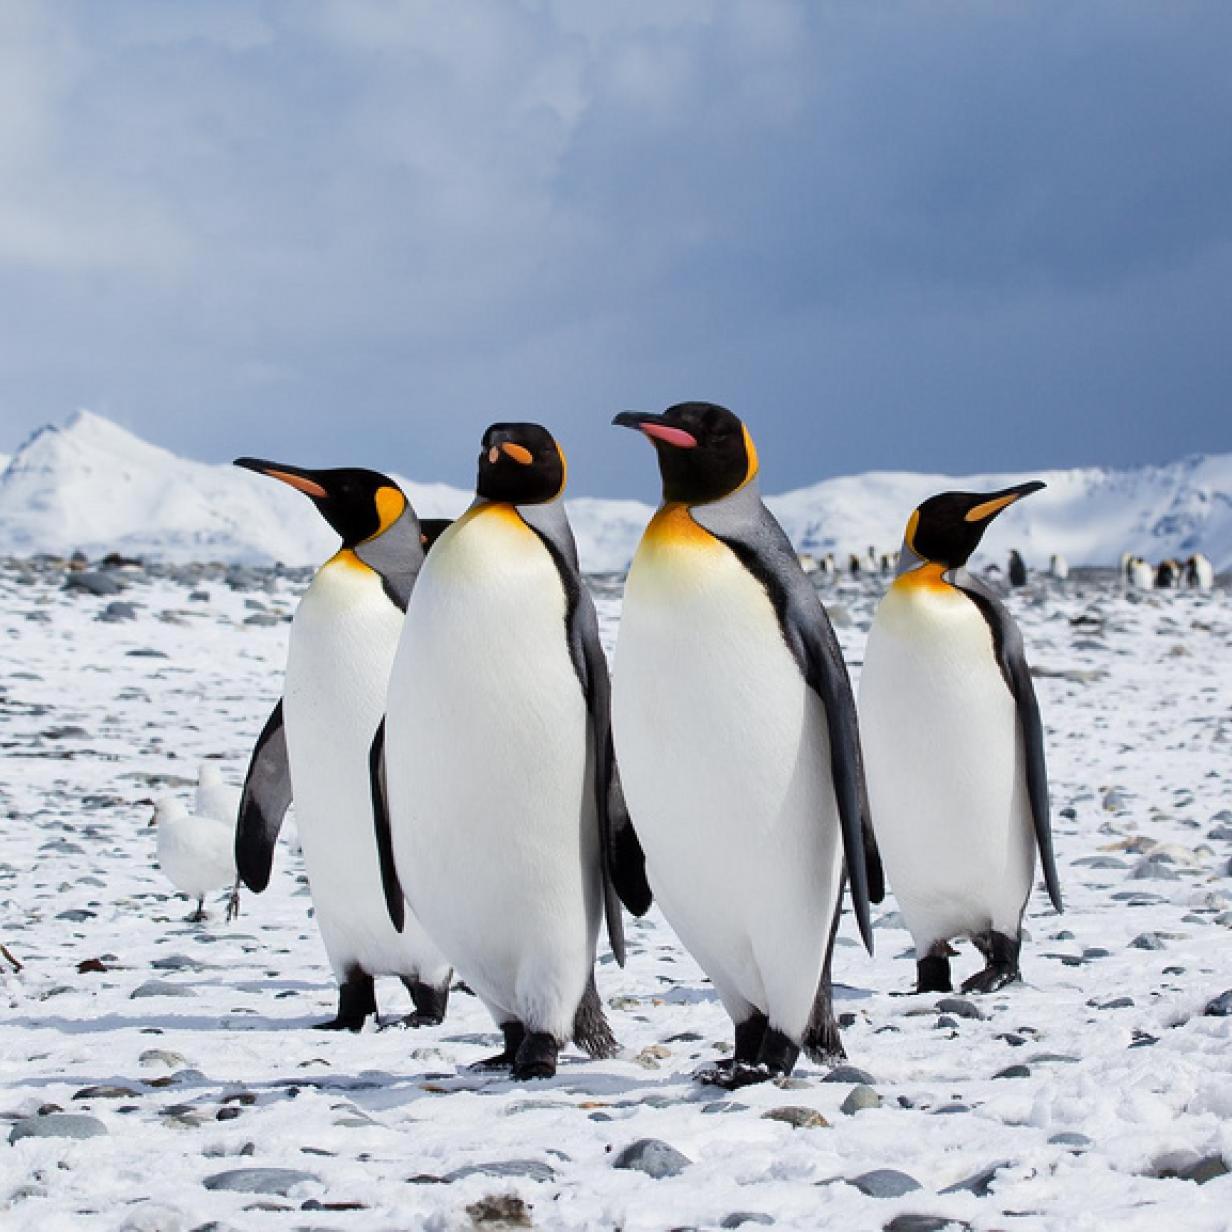 Nach Ischgl-Doku: Muss man umgefallene Pinguine wieder aufstellen?